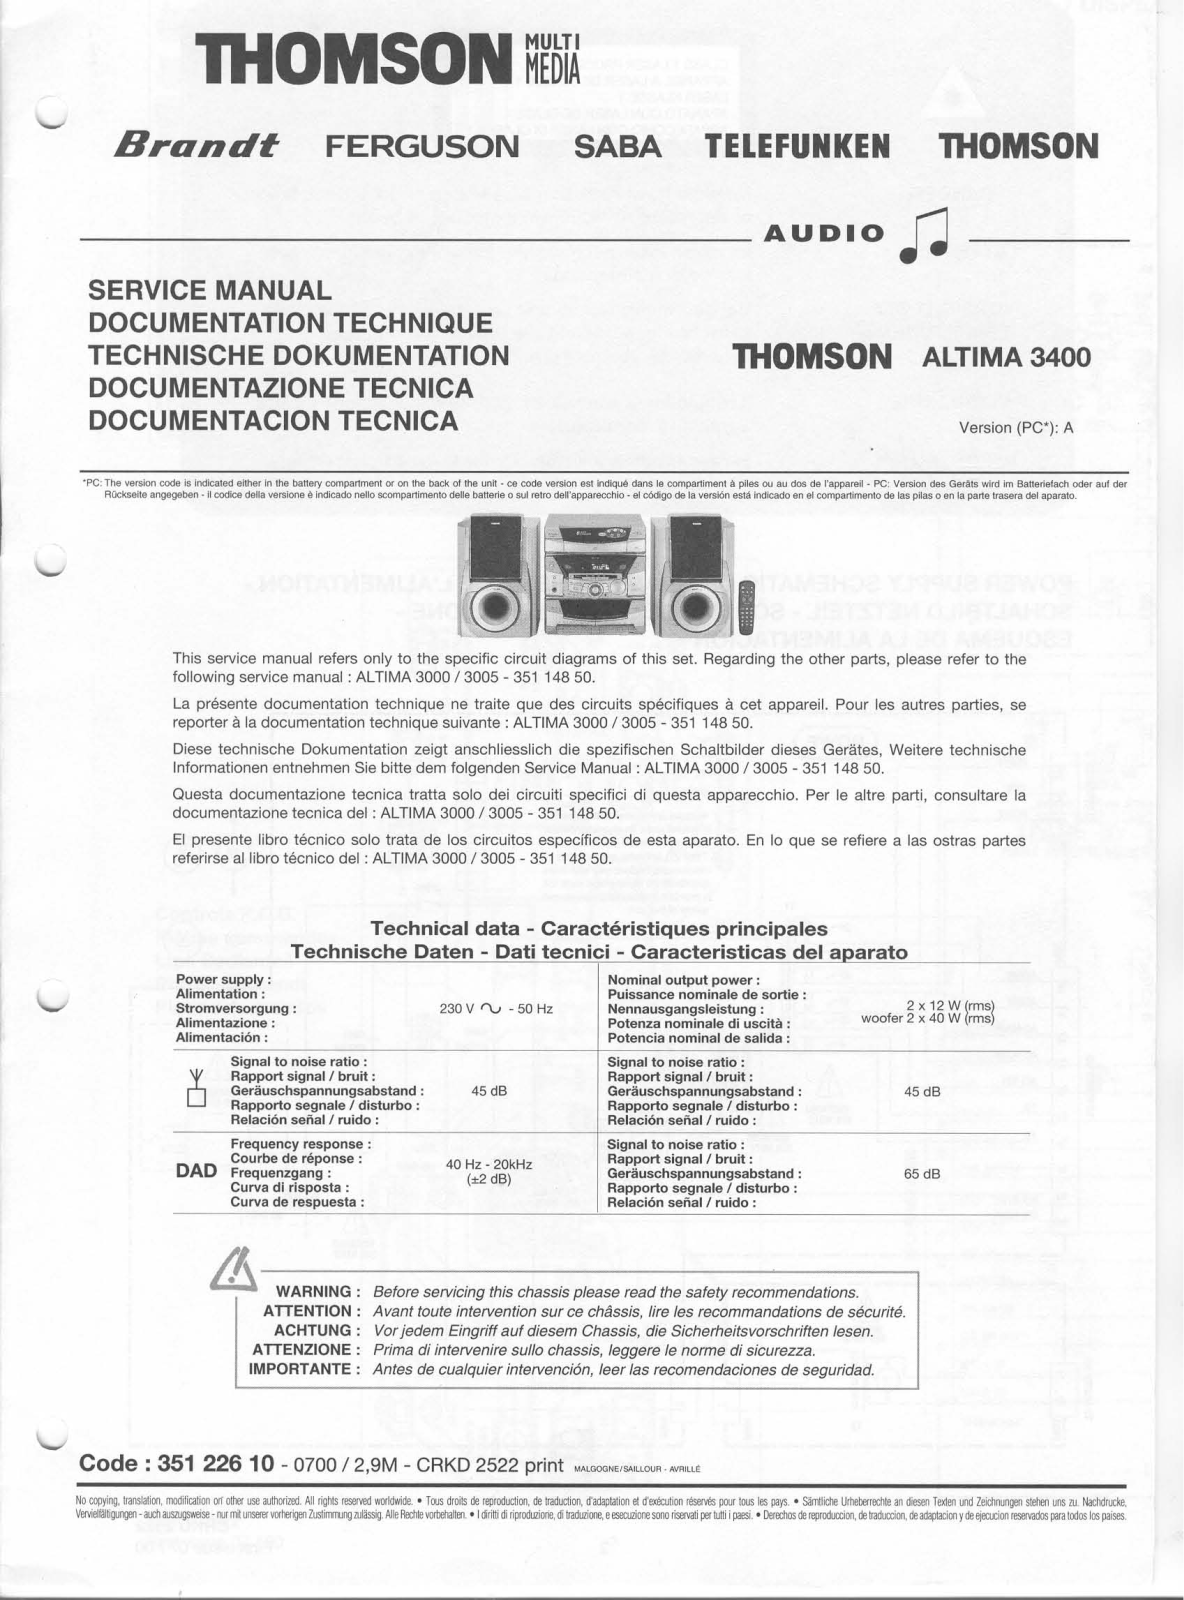 Thomson Altima 3400 Service manual